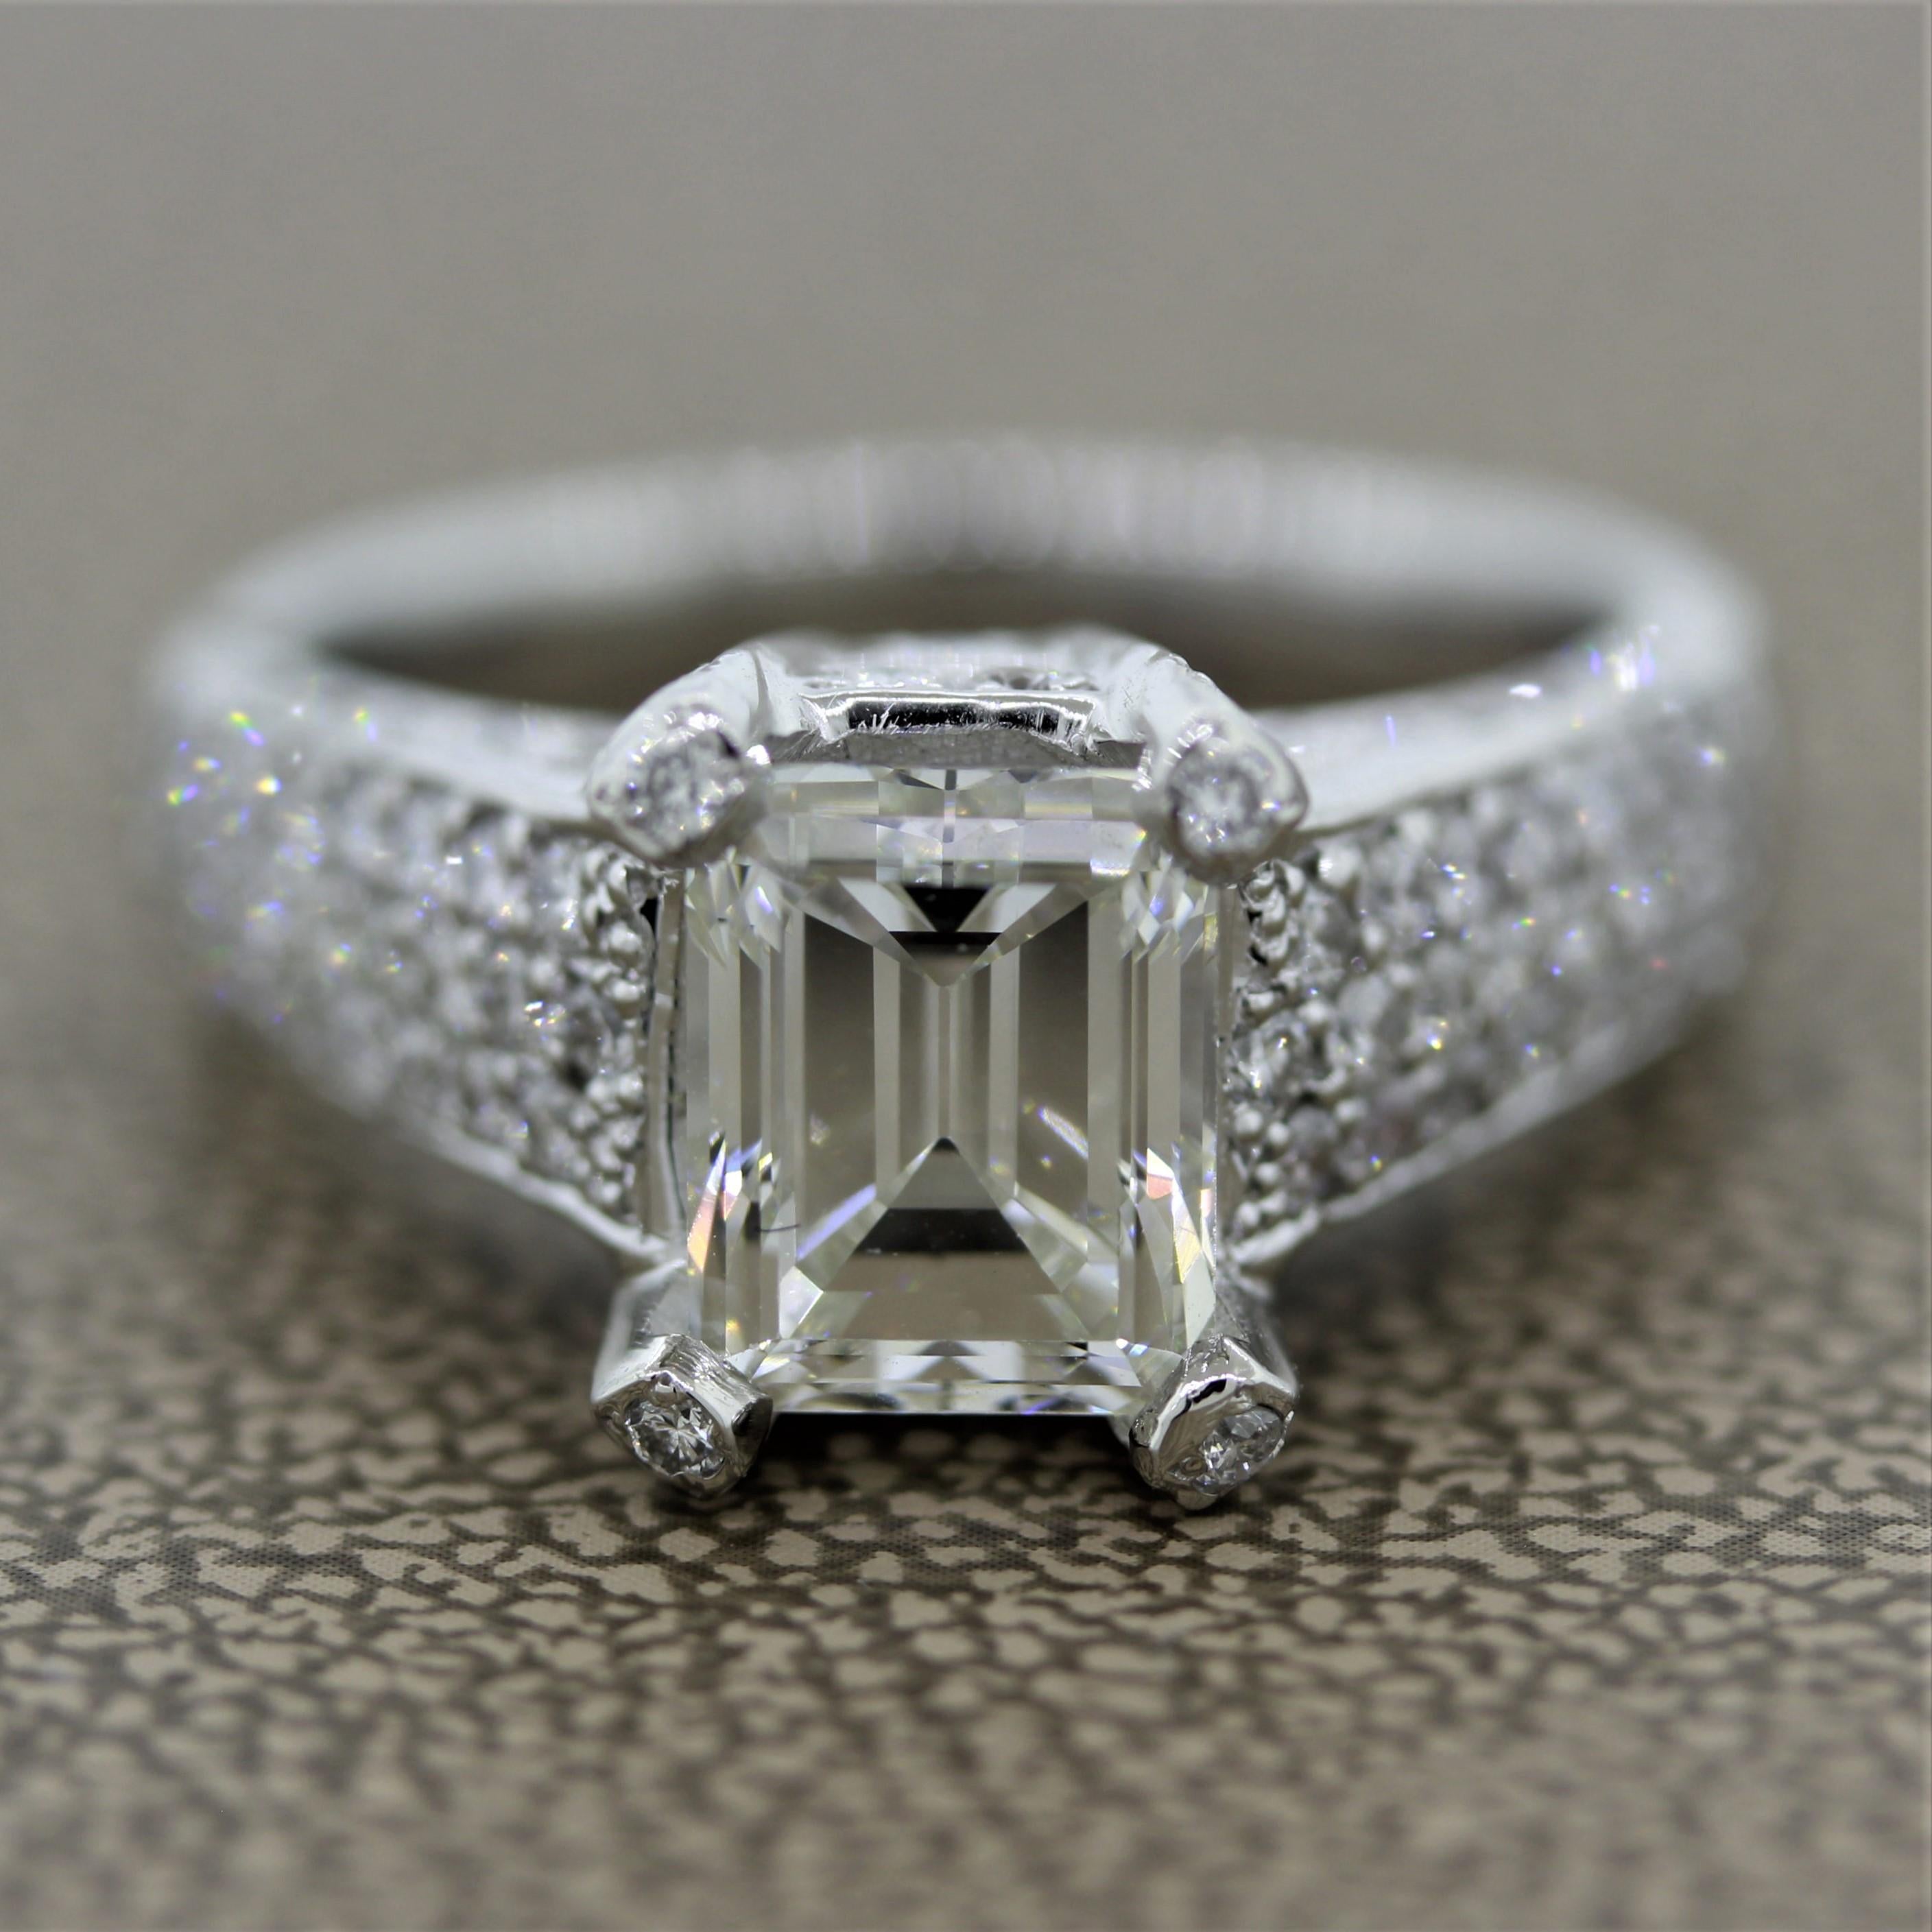 Ein schöner Diamant-Verlobungsring mit einem 2,62 Karat schweren Diamanten im Smaragdschliff, der vom GIA mit der Farbe I und der Reinheit VS2 zertifiziert wurde. Der Ring wird durch 1,11 Karat runde Diamanten im Brillantschliff akzentuiert, die um